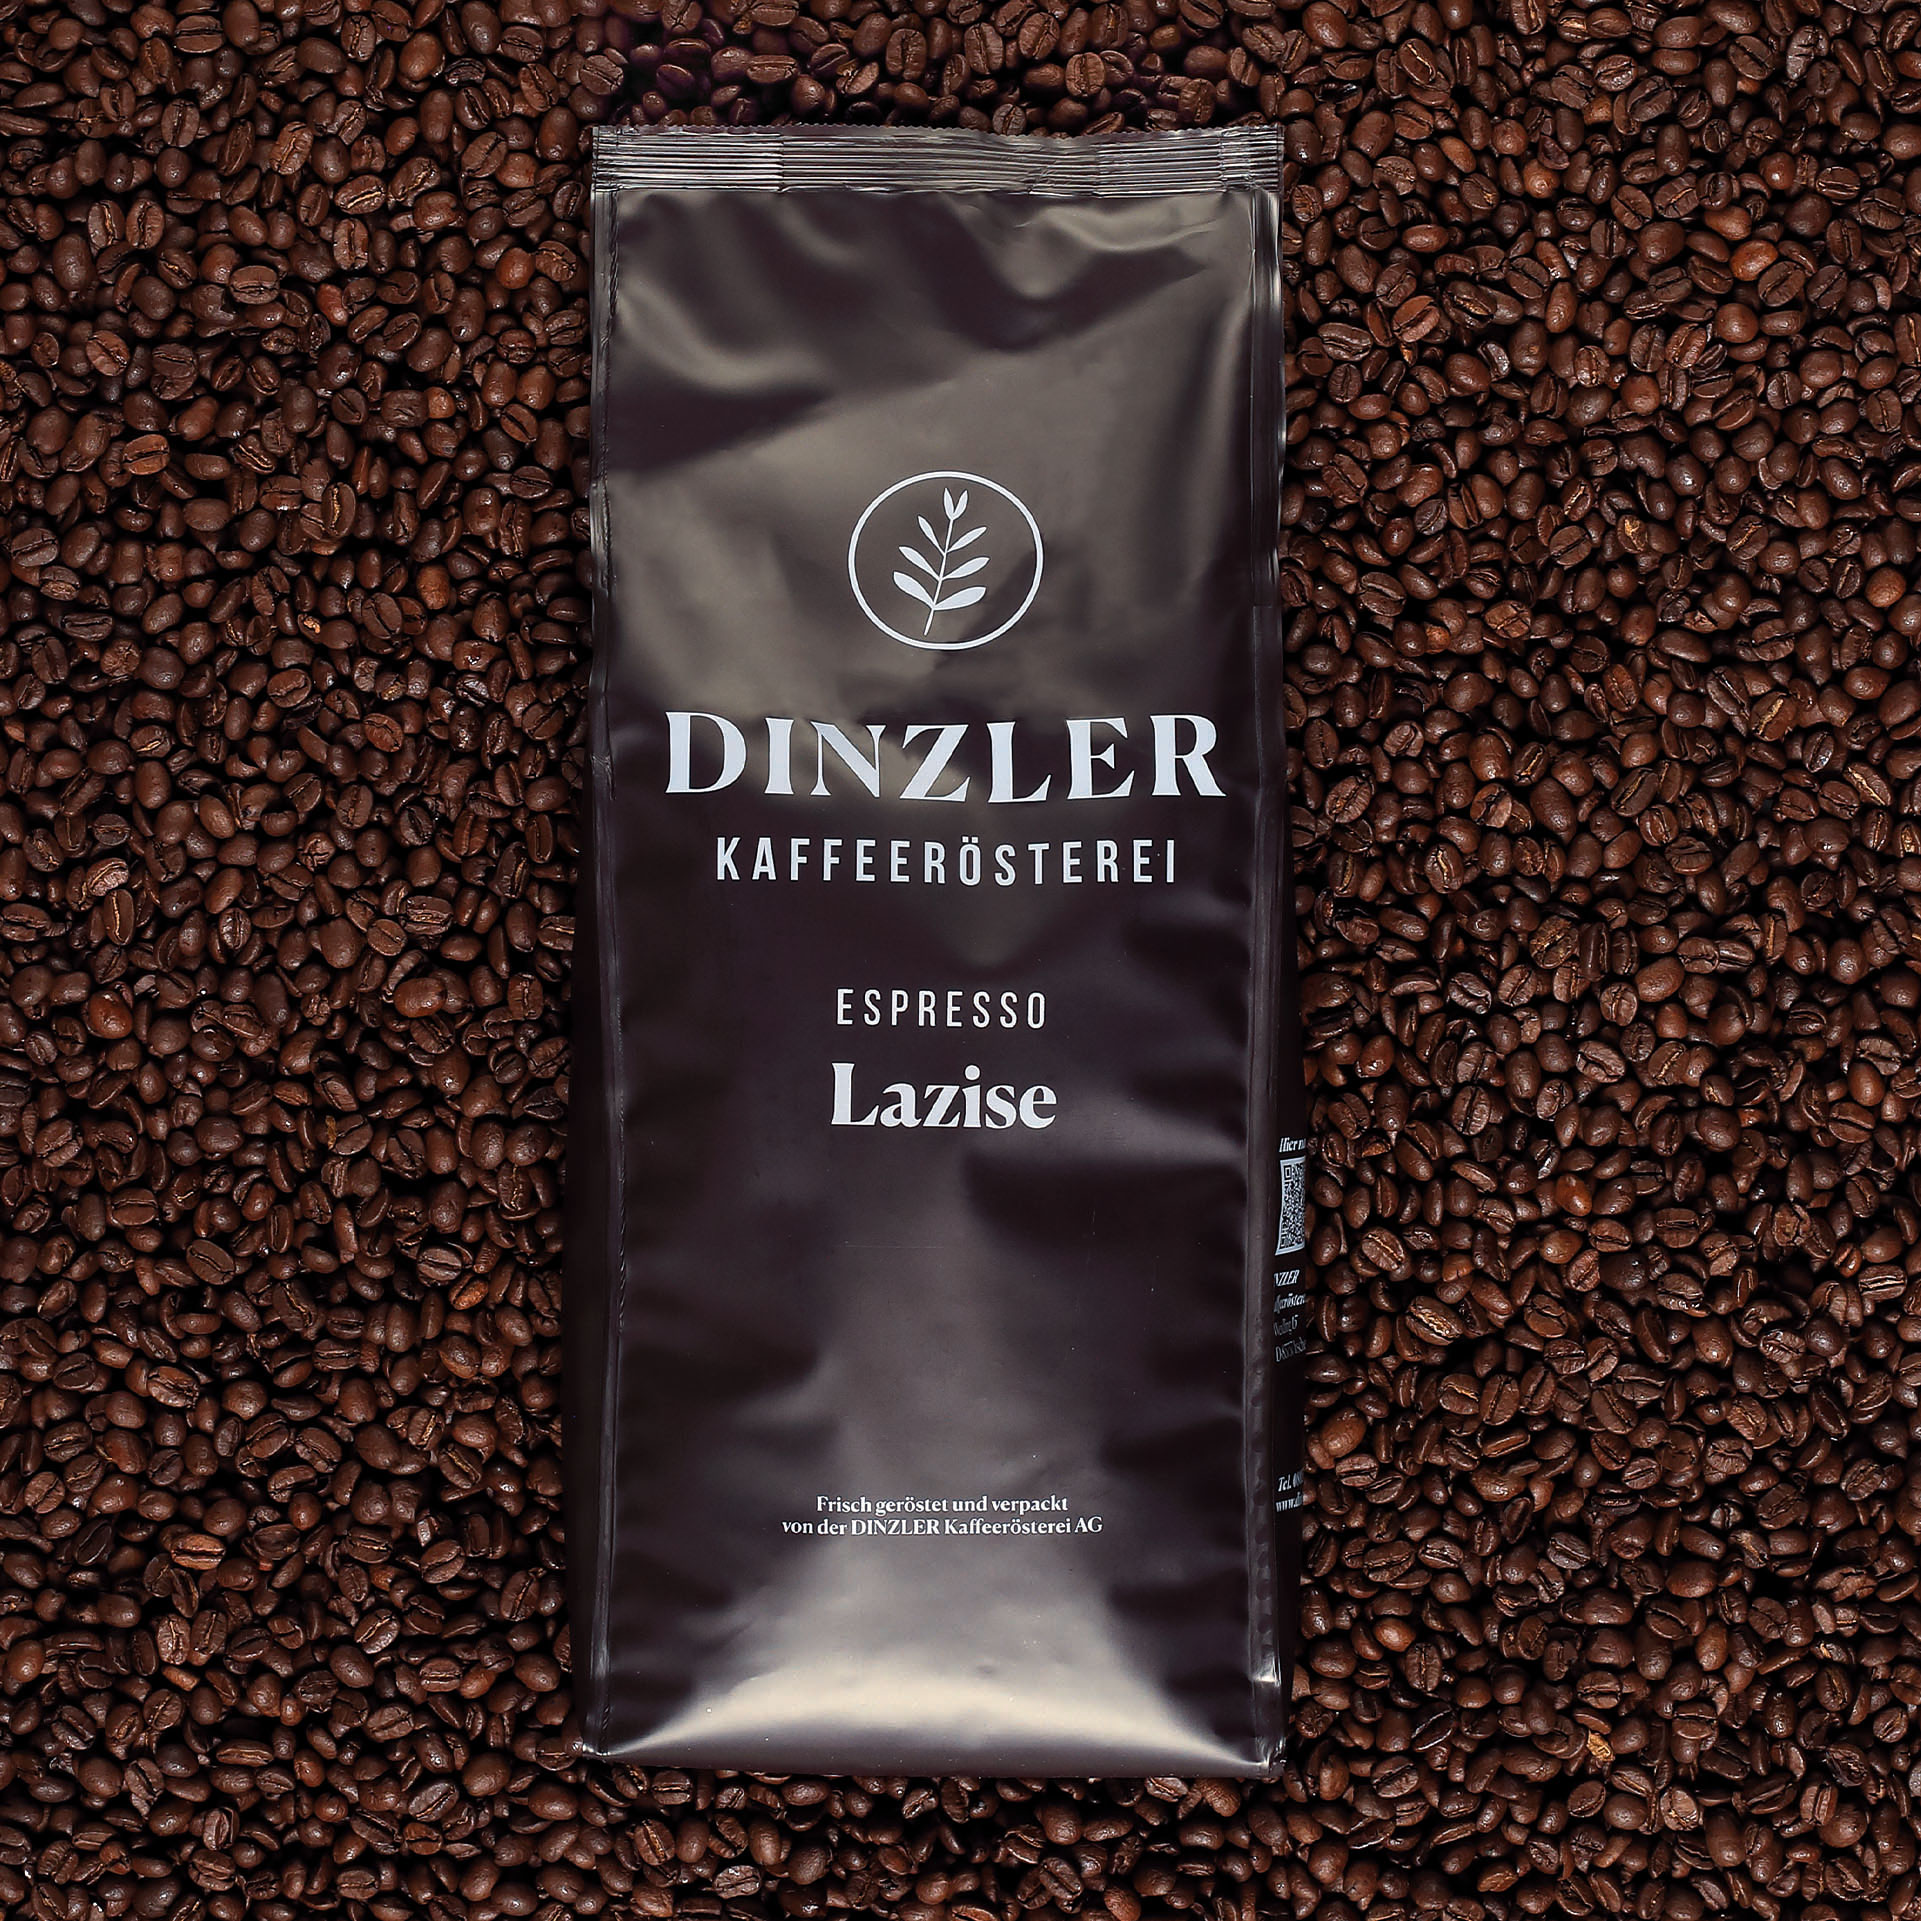 Produktbild DINZLER Espresso Lazise| DINZLER Kaffeerösterei